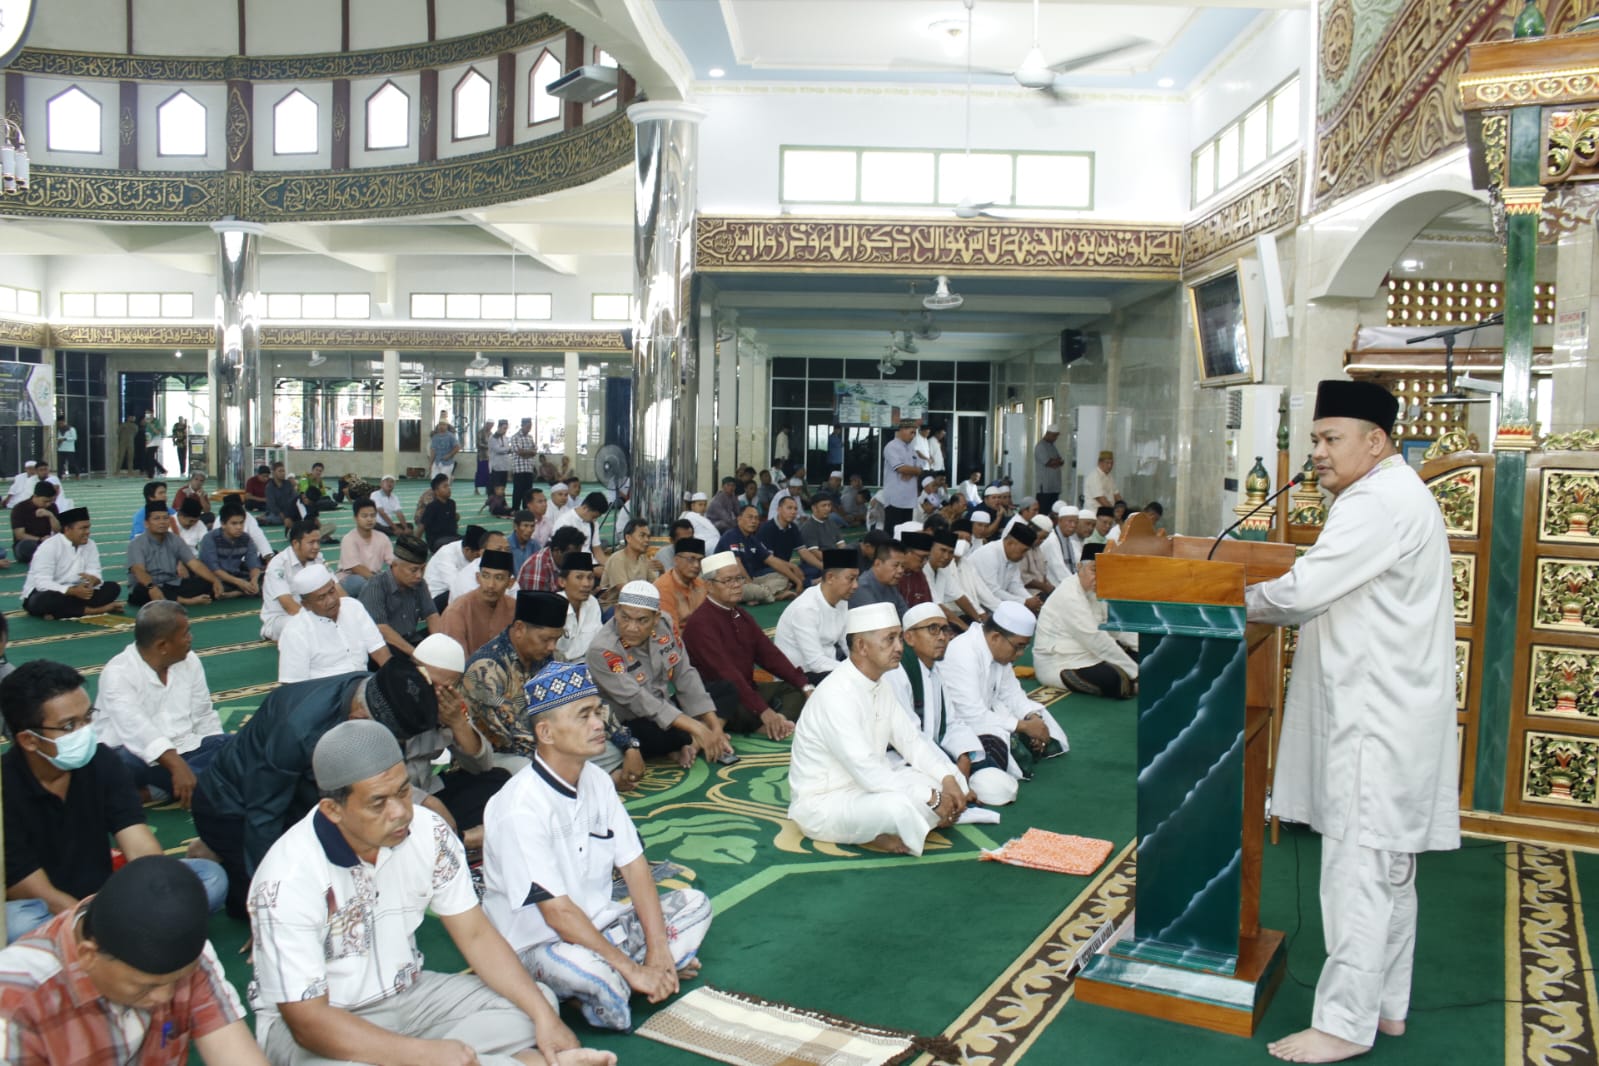 PJ Walikota Lubuklinggau Safari Jumat Perdana di Masjid Al-Baari